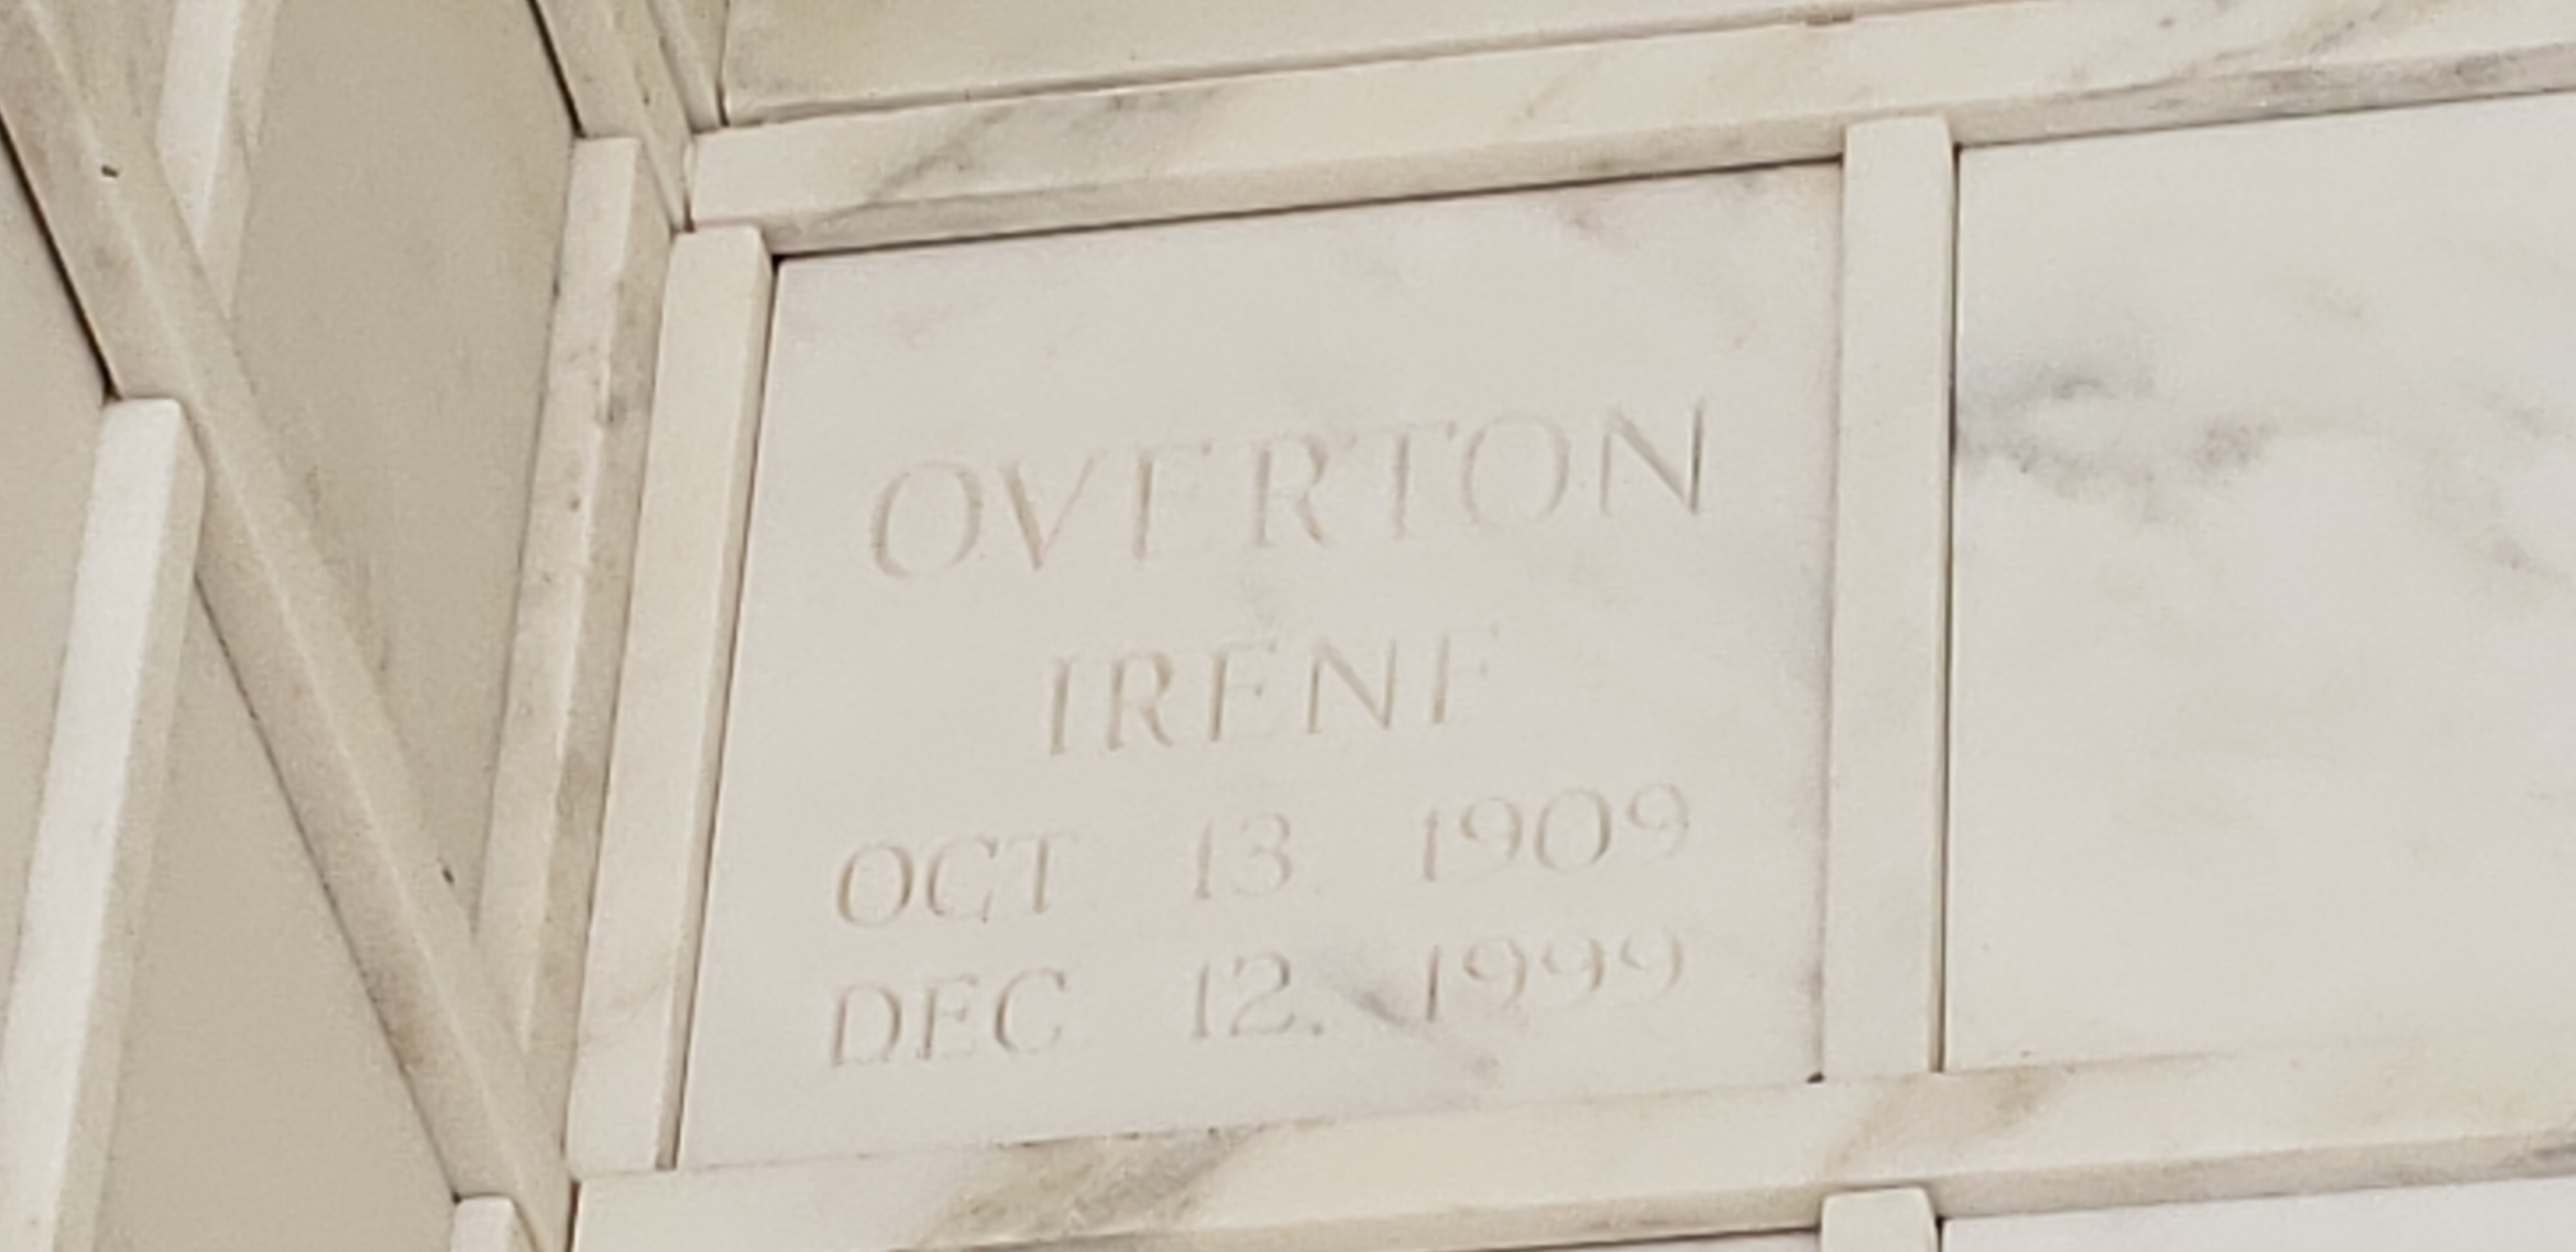 Irene Overton